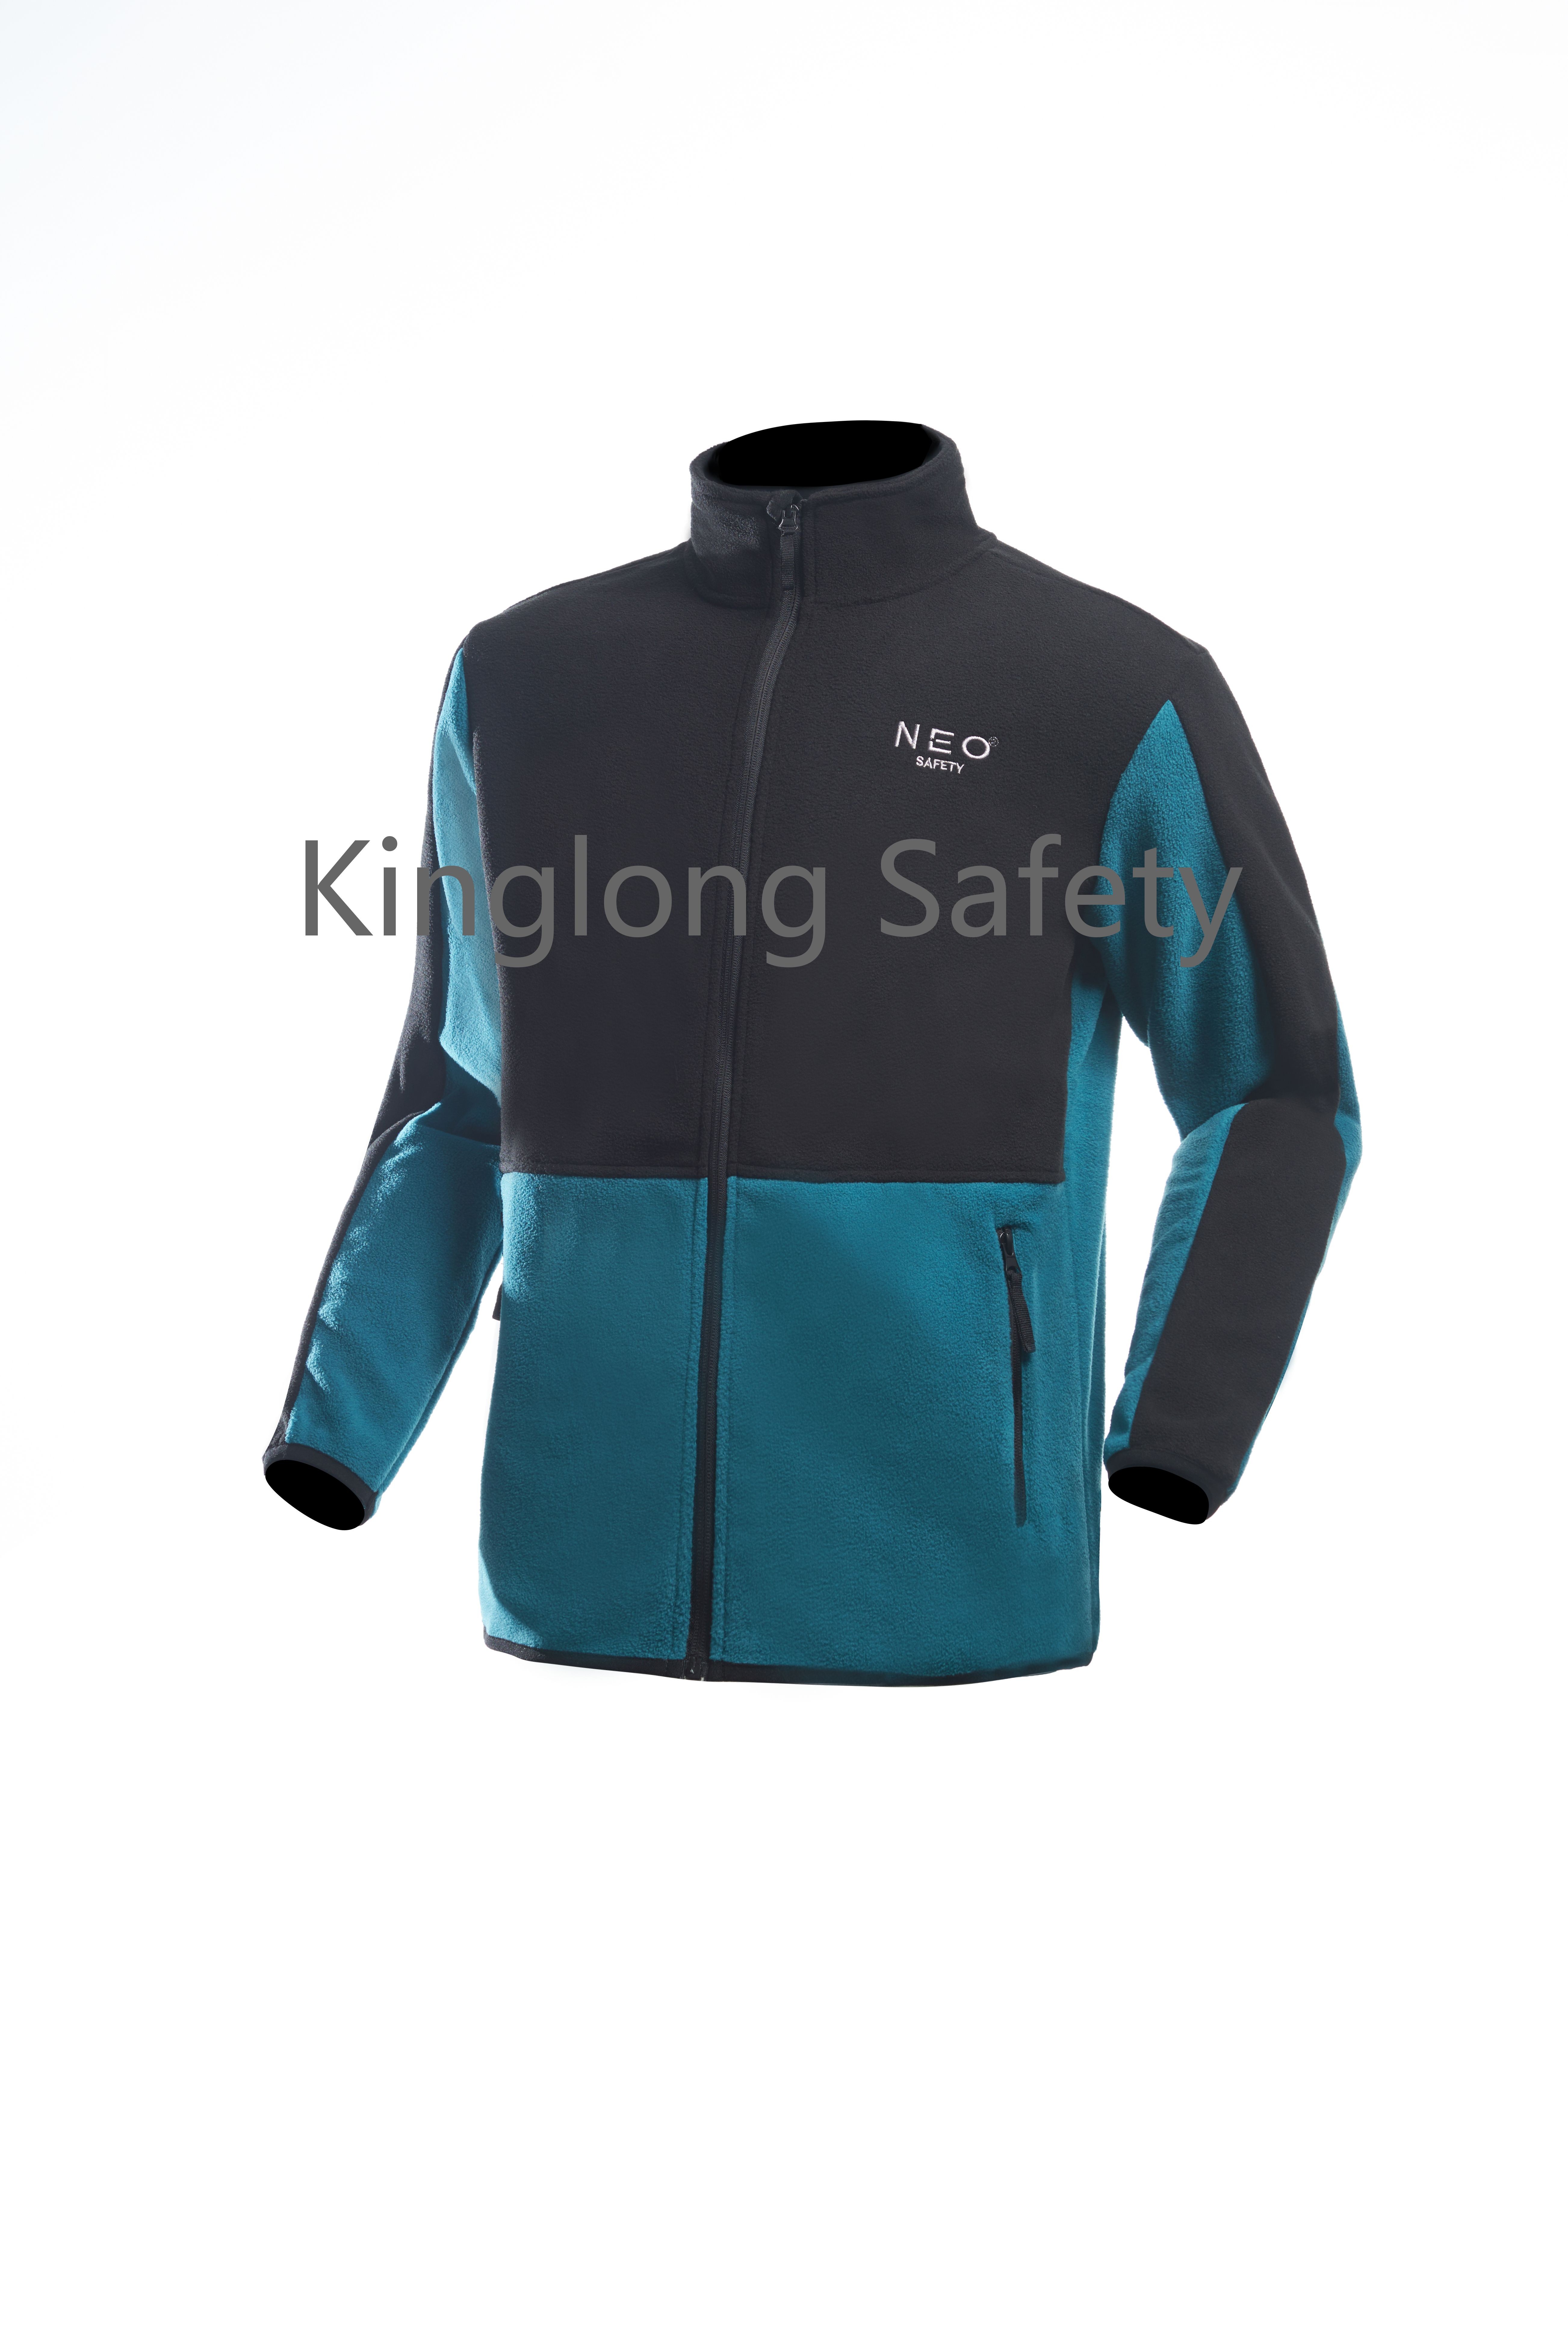 Китай Мужская флисовая куртка на двусторонней молнии, зима-осень, весна для мужчин, индивидуальный логотип, уличная рабочая одежда, униформа компании производителя